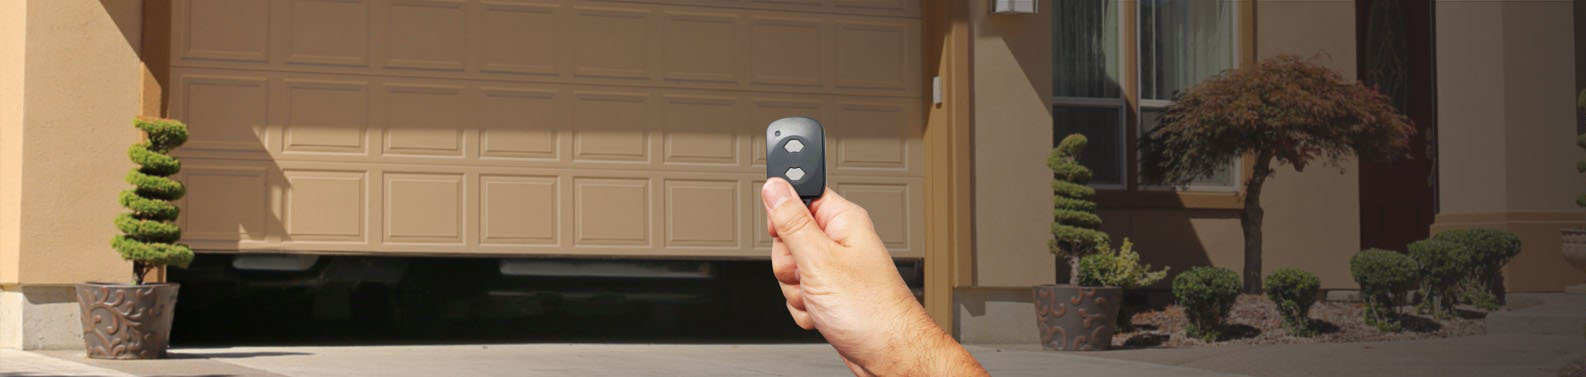 a hand using a garage door opener button to open a garage door